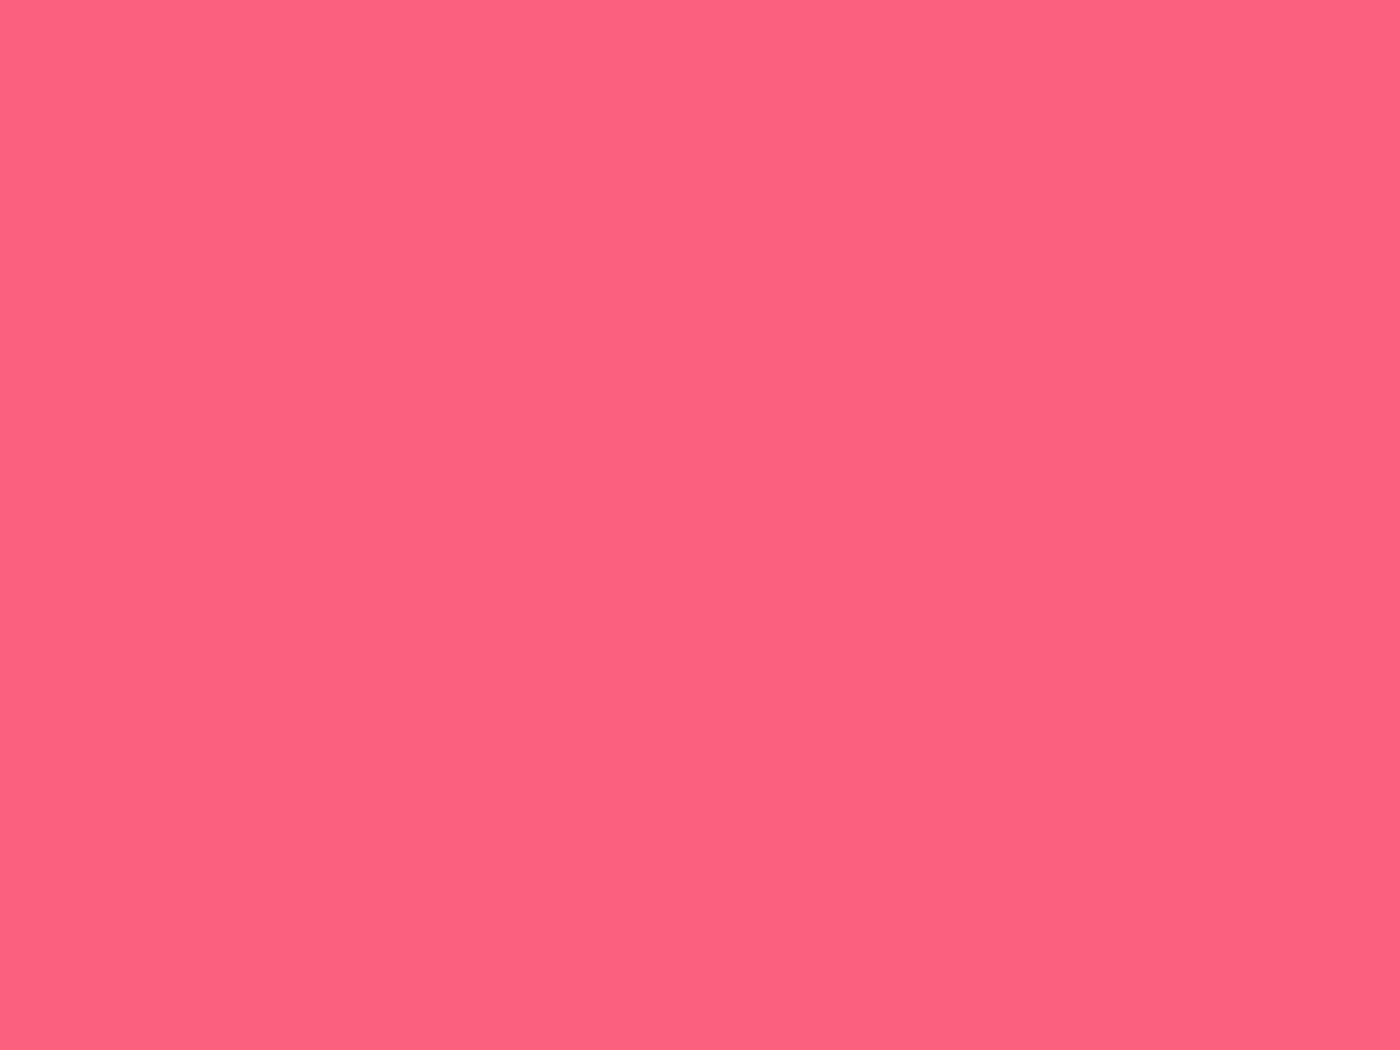 1400x1050 Brink Pink Solid Color Background